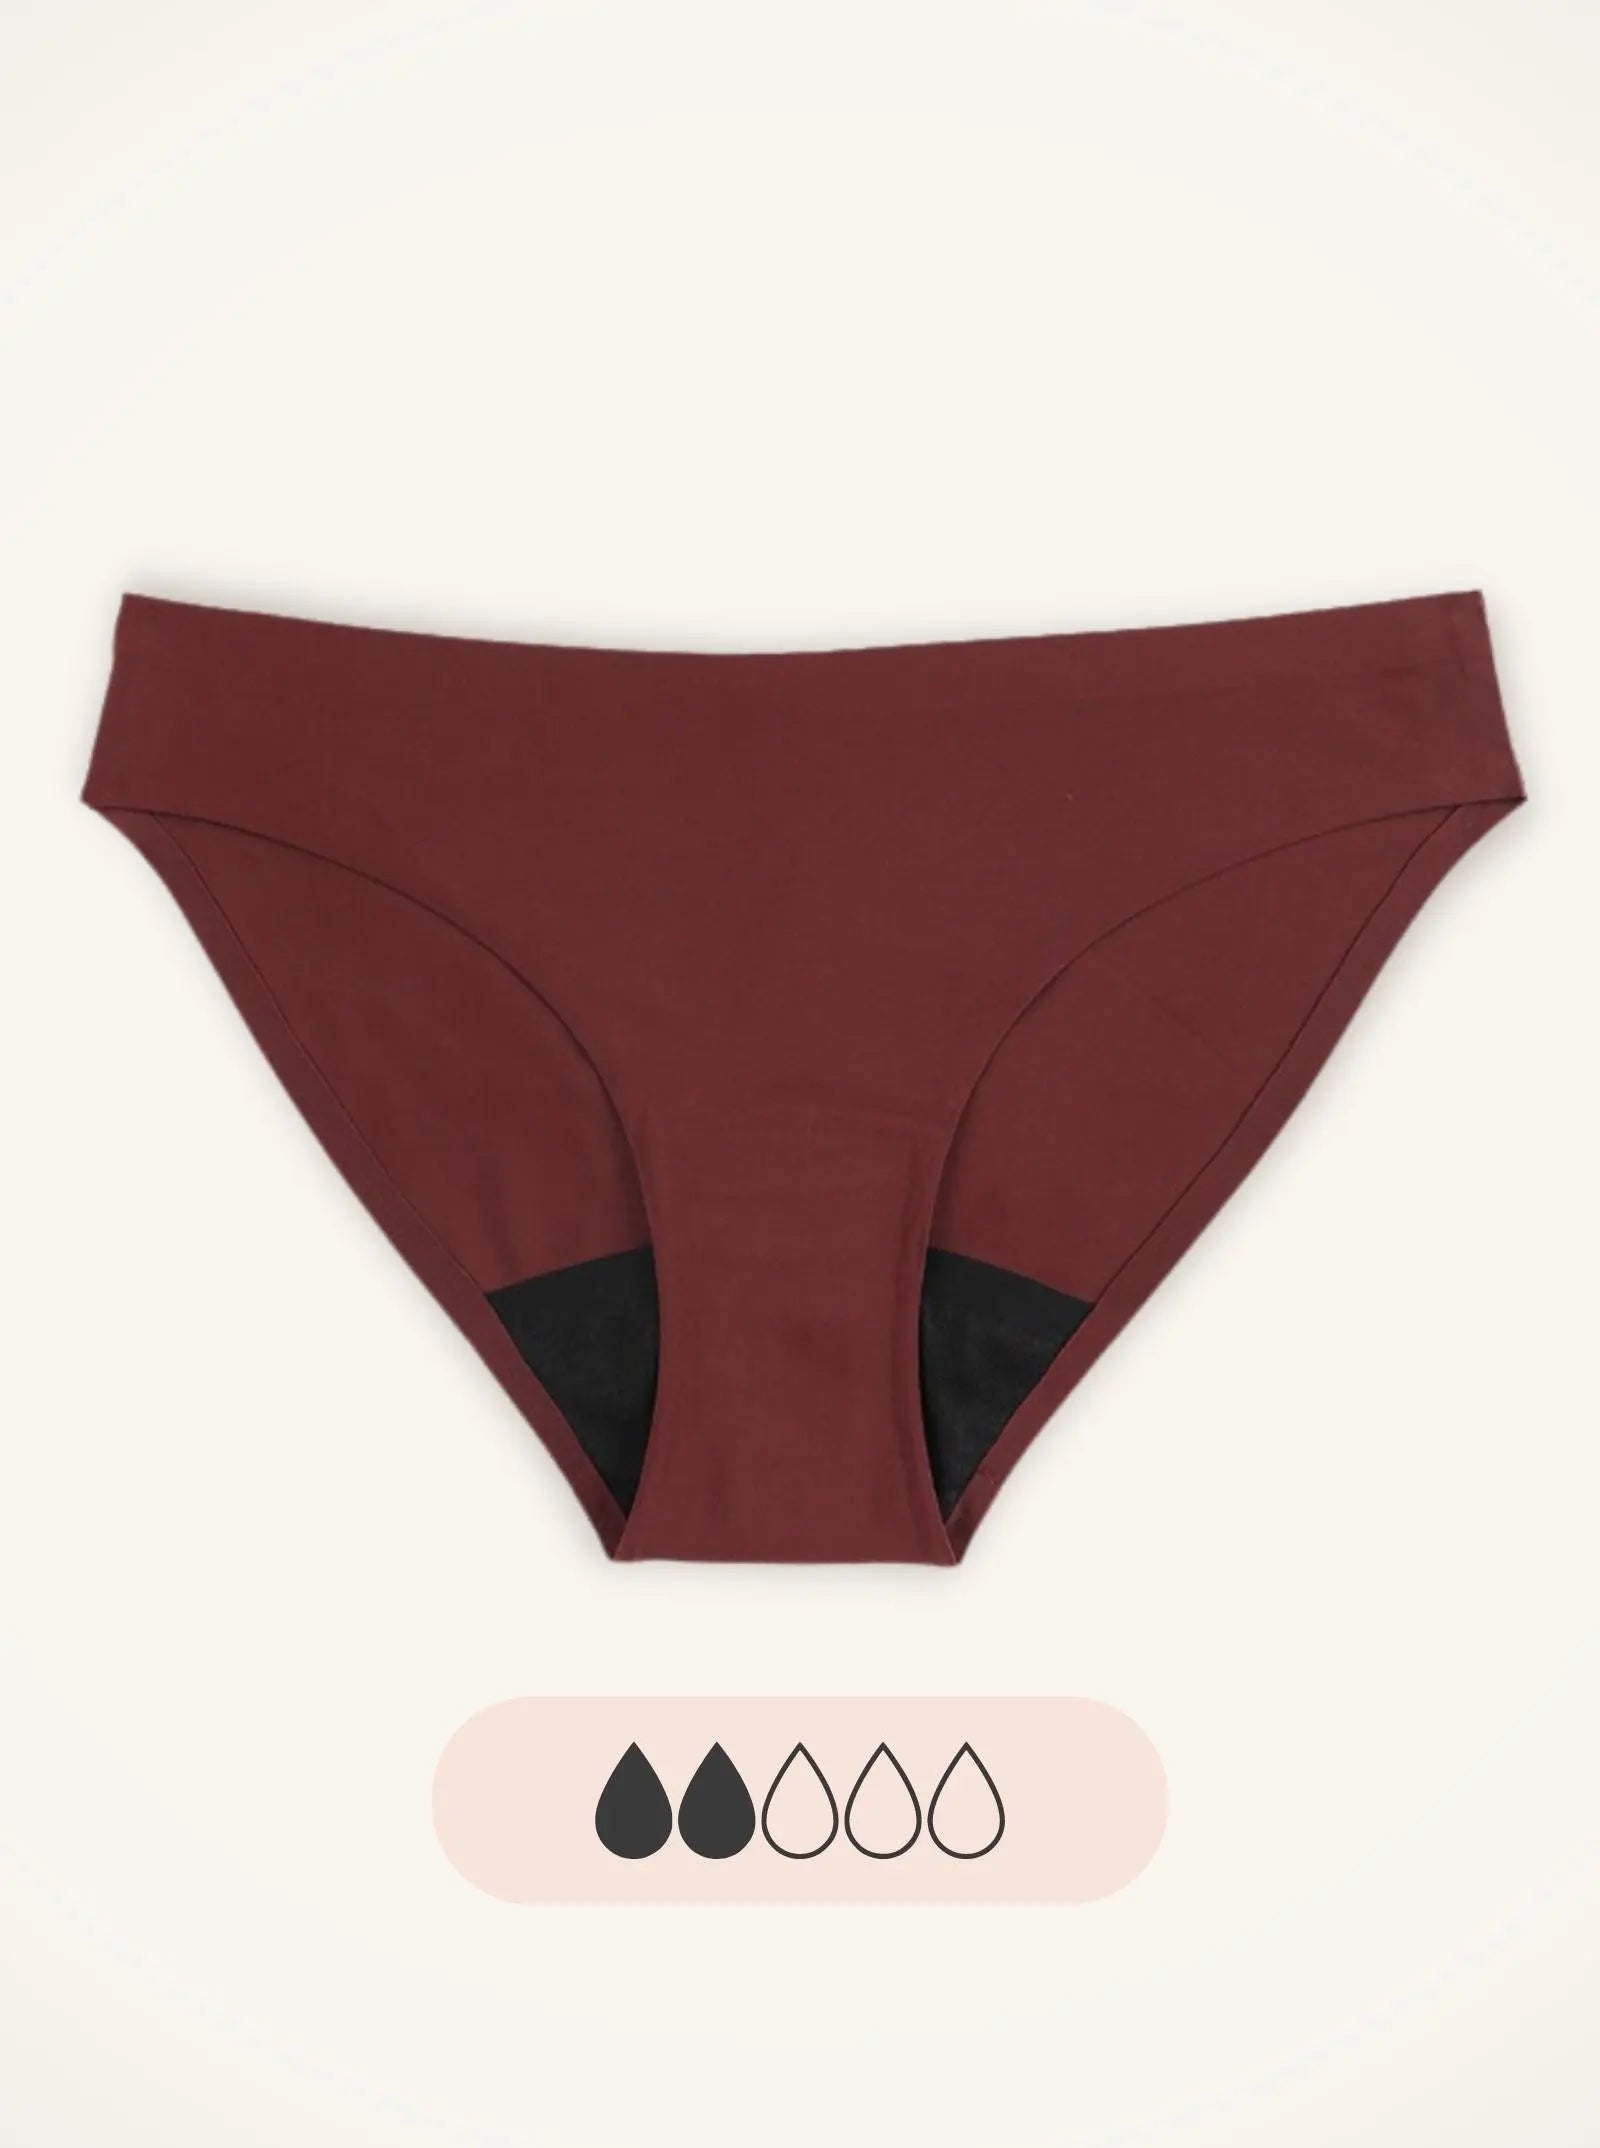 Invisi Seamless French Cut Eco Period Underwear – Eco Period Australia